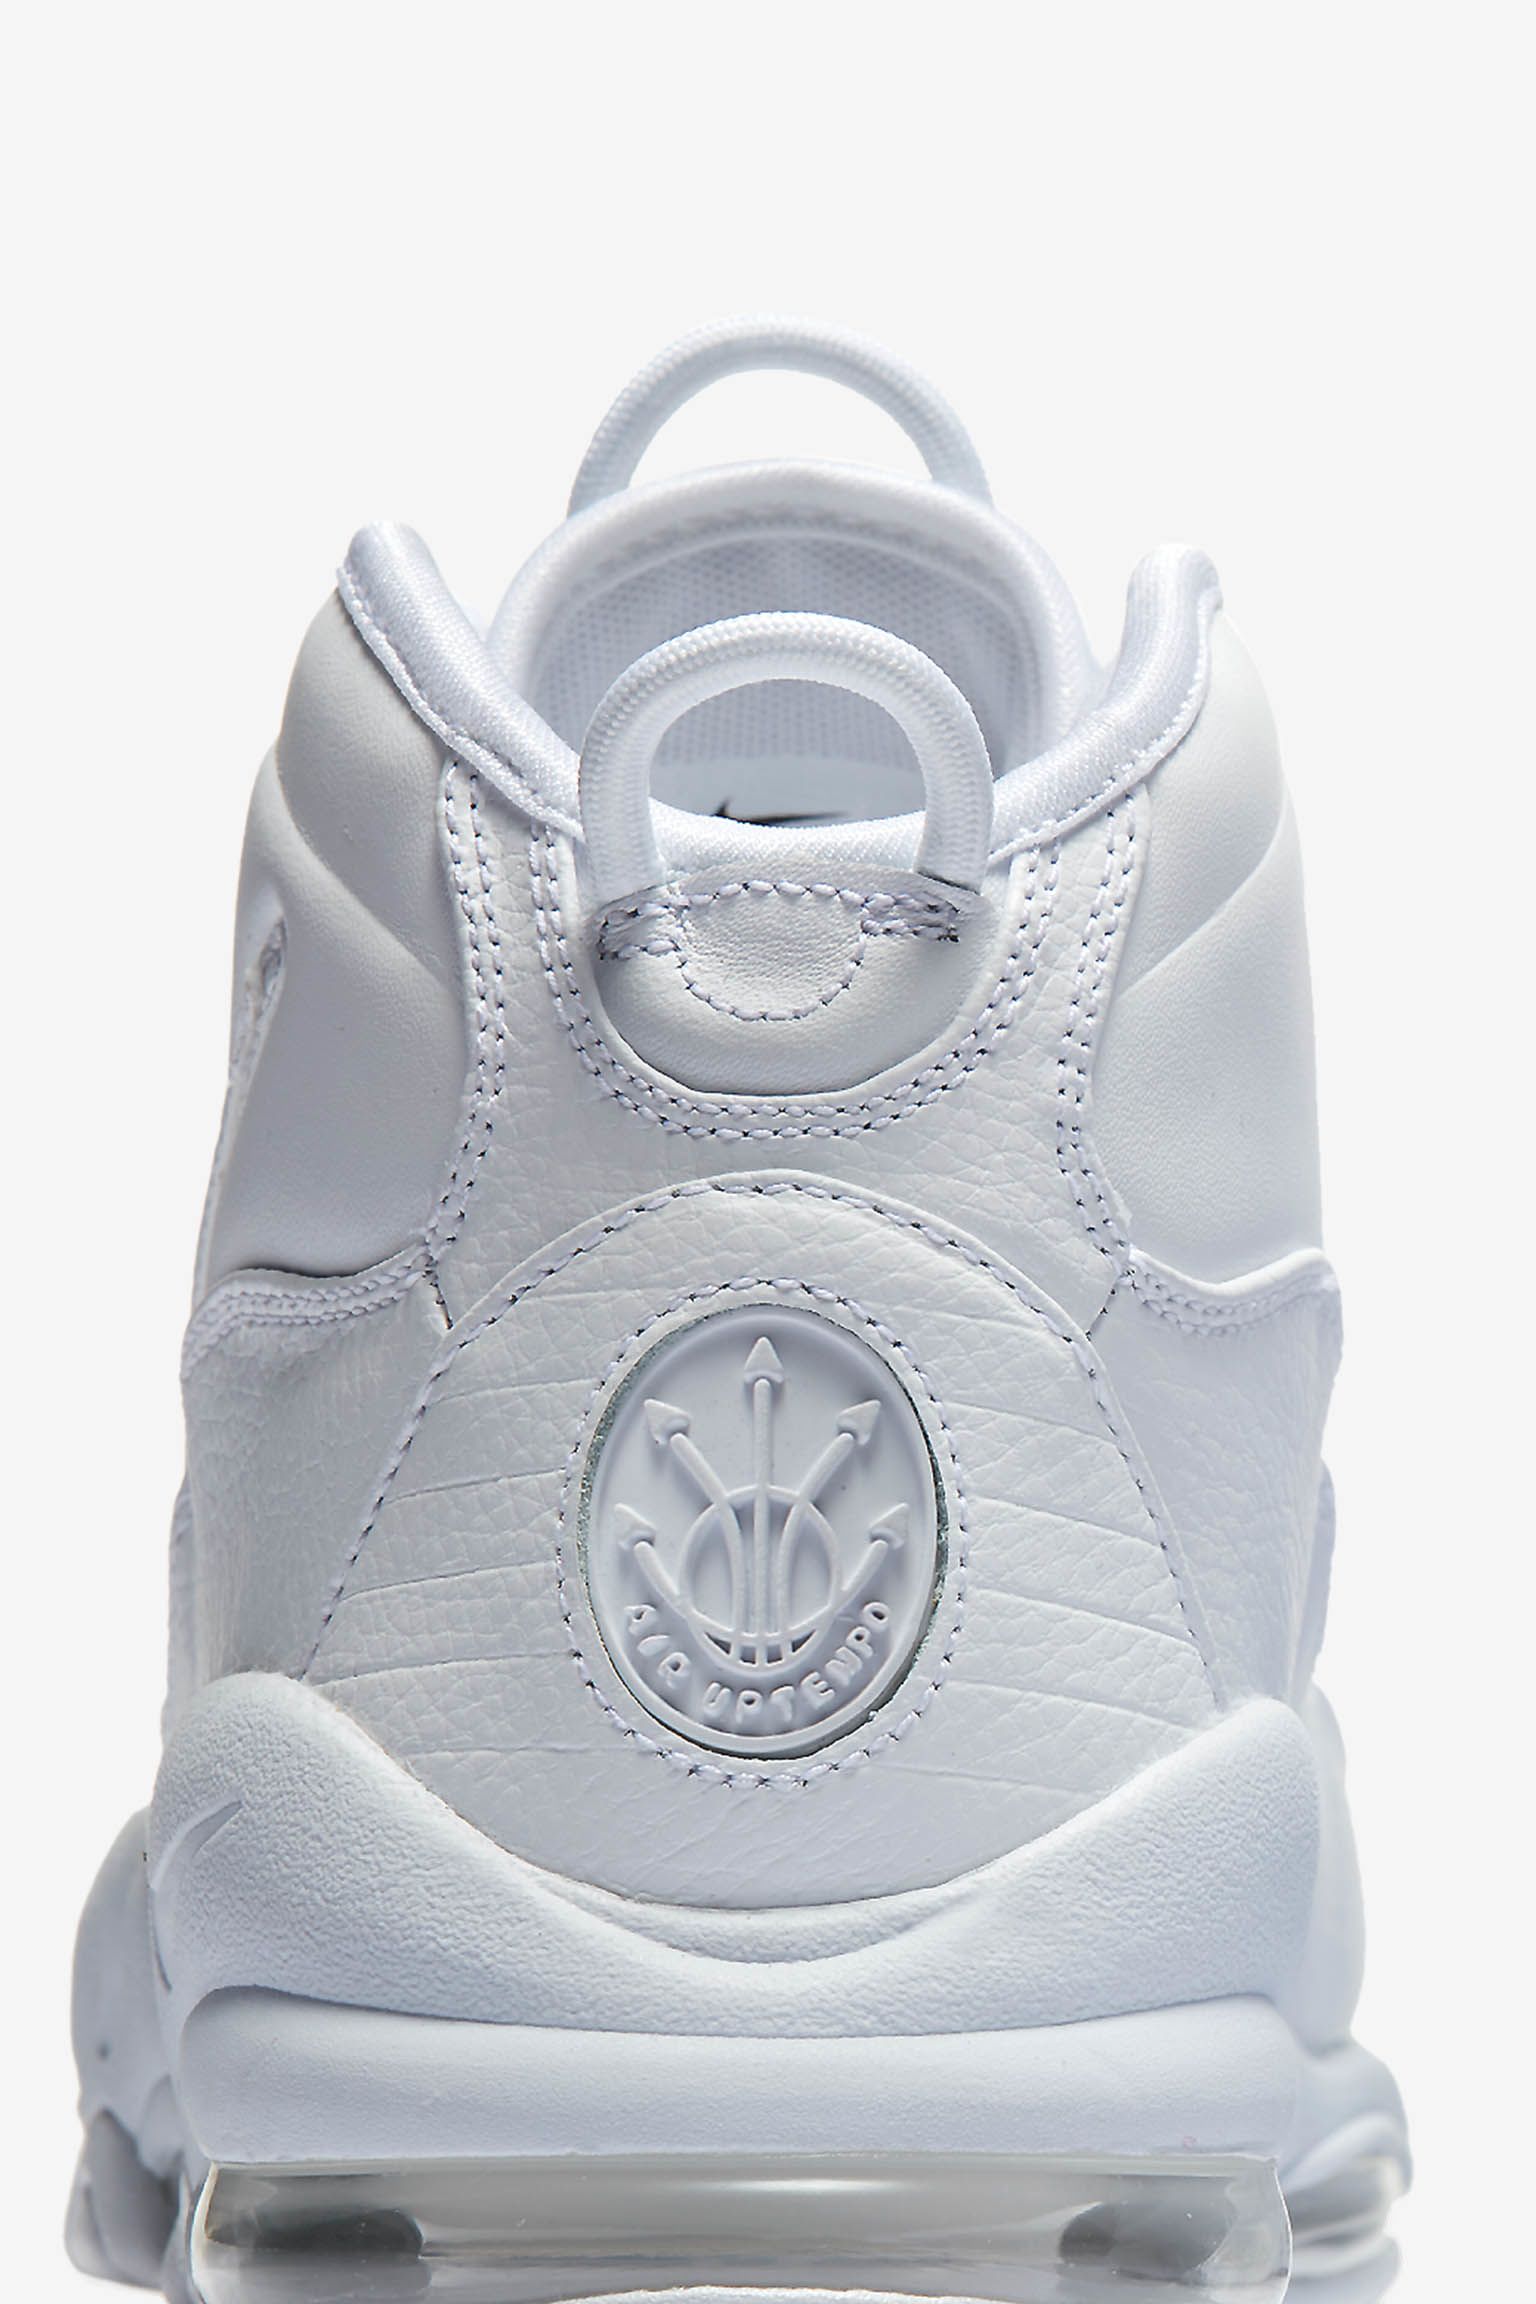 ナイキ エア マックス アップテンポ 95 'White on White' 発売日. Nike 